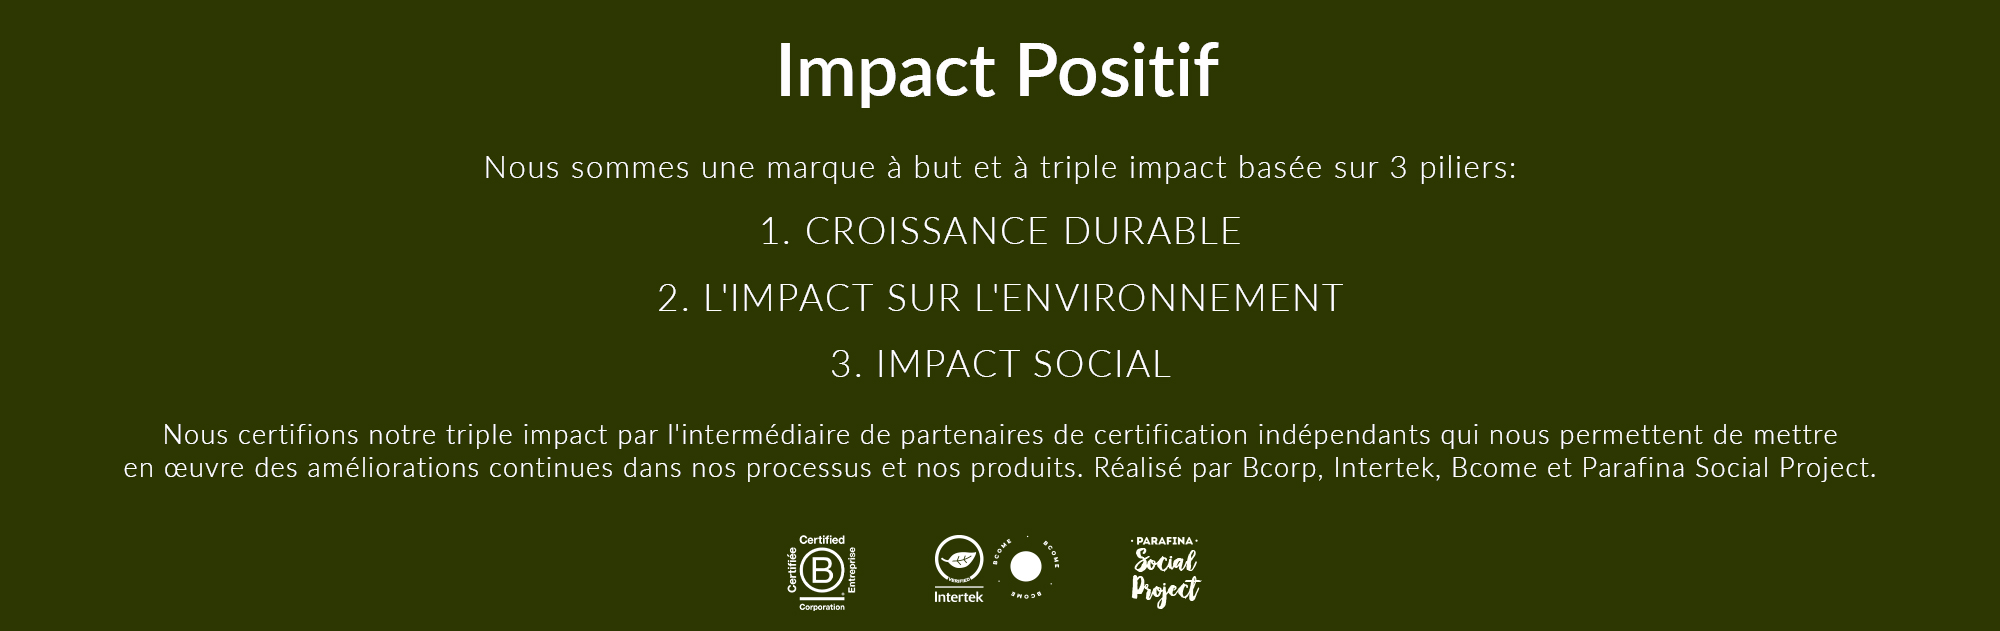 Web-impacto-positivo-CAMBIOS-ELI-_02